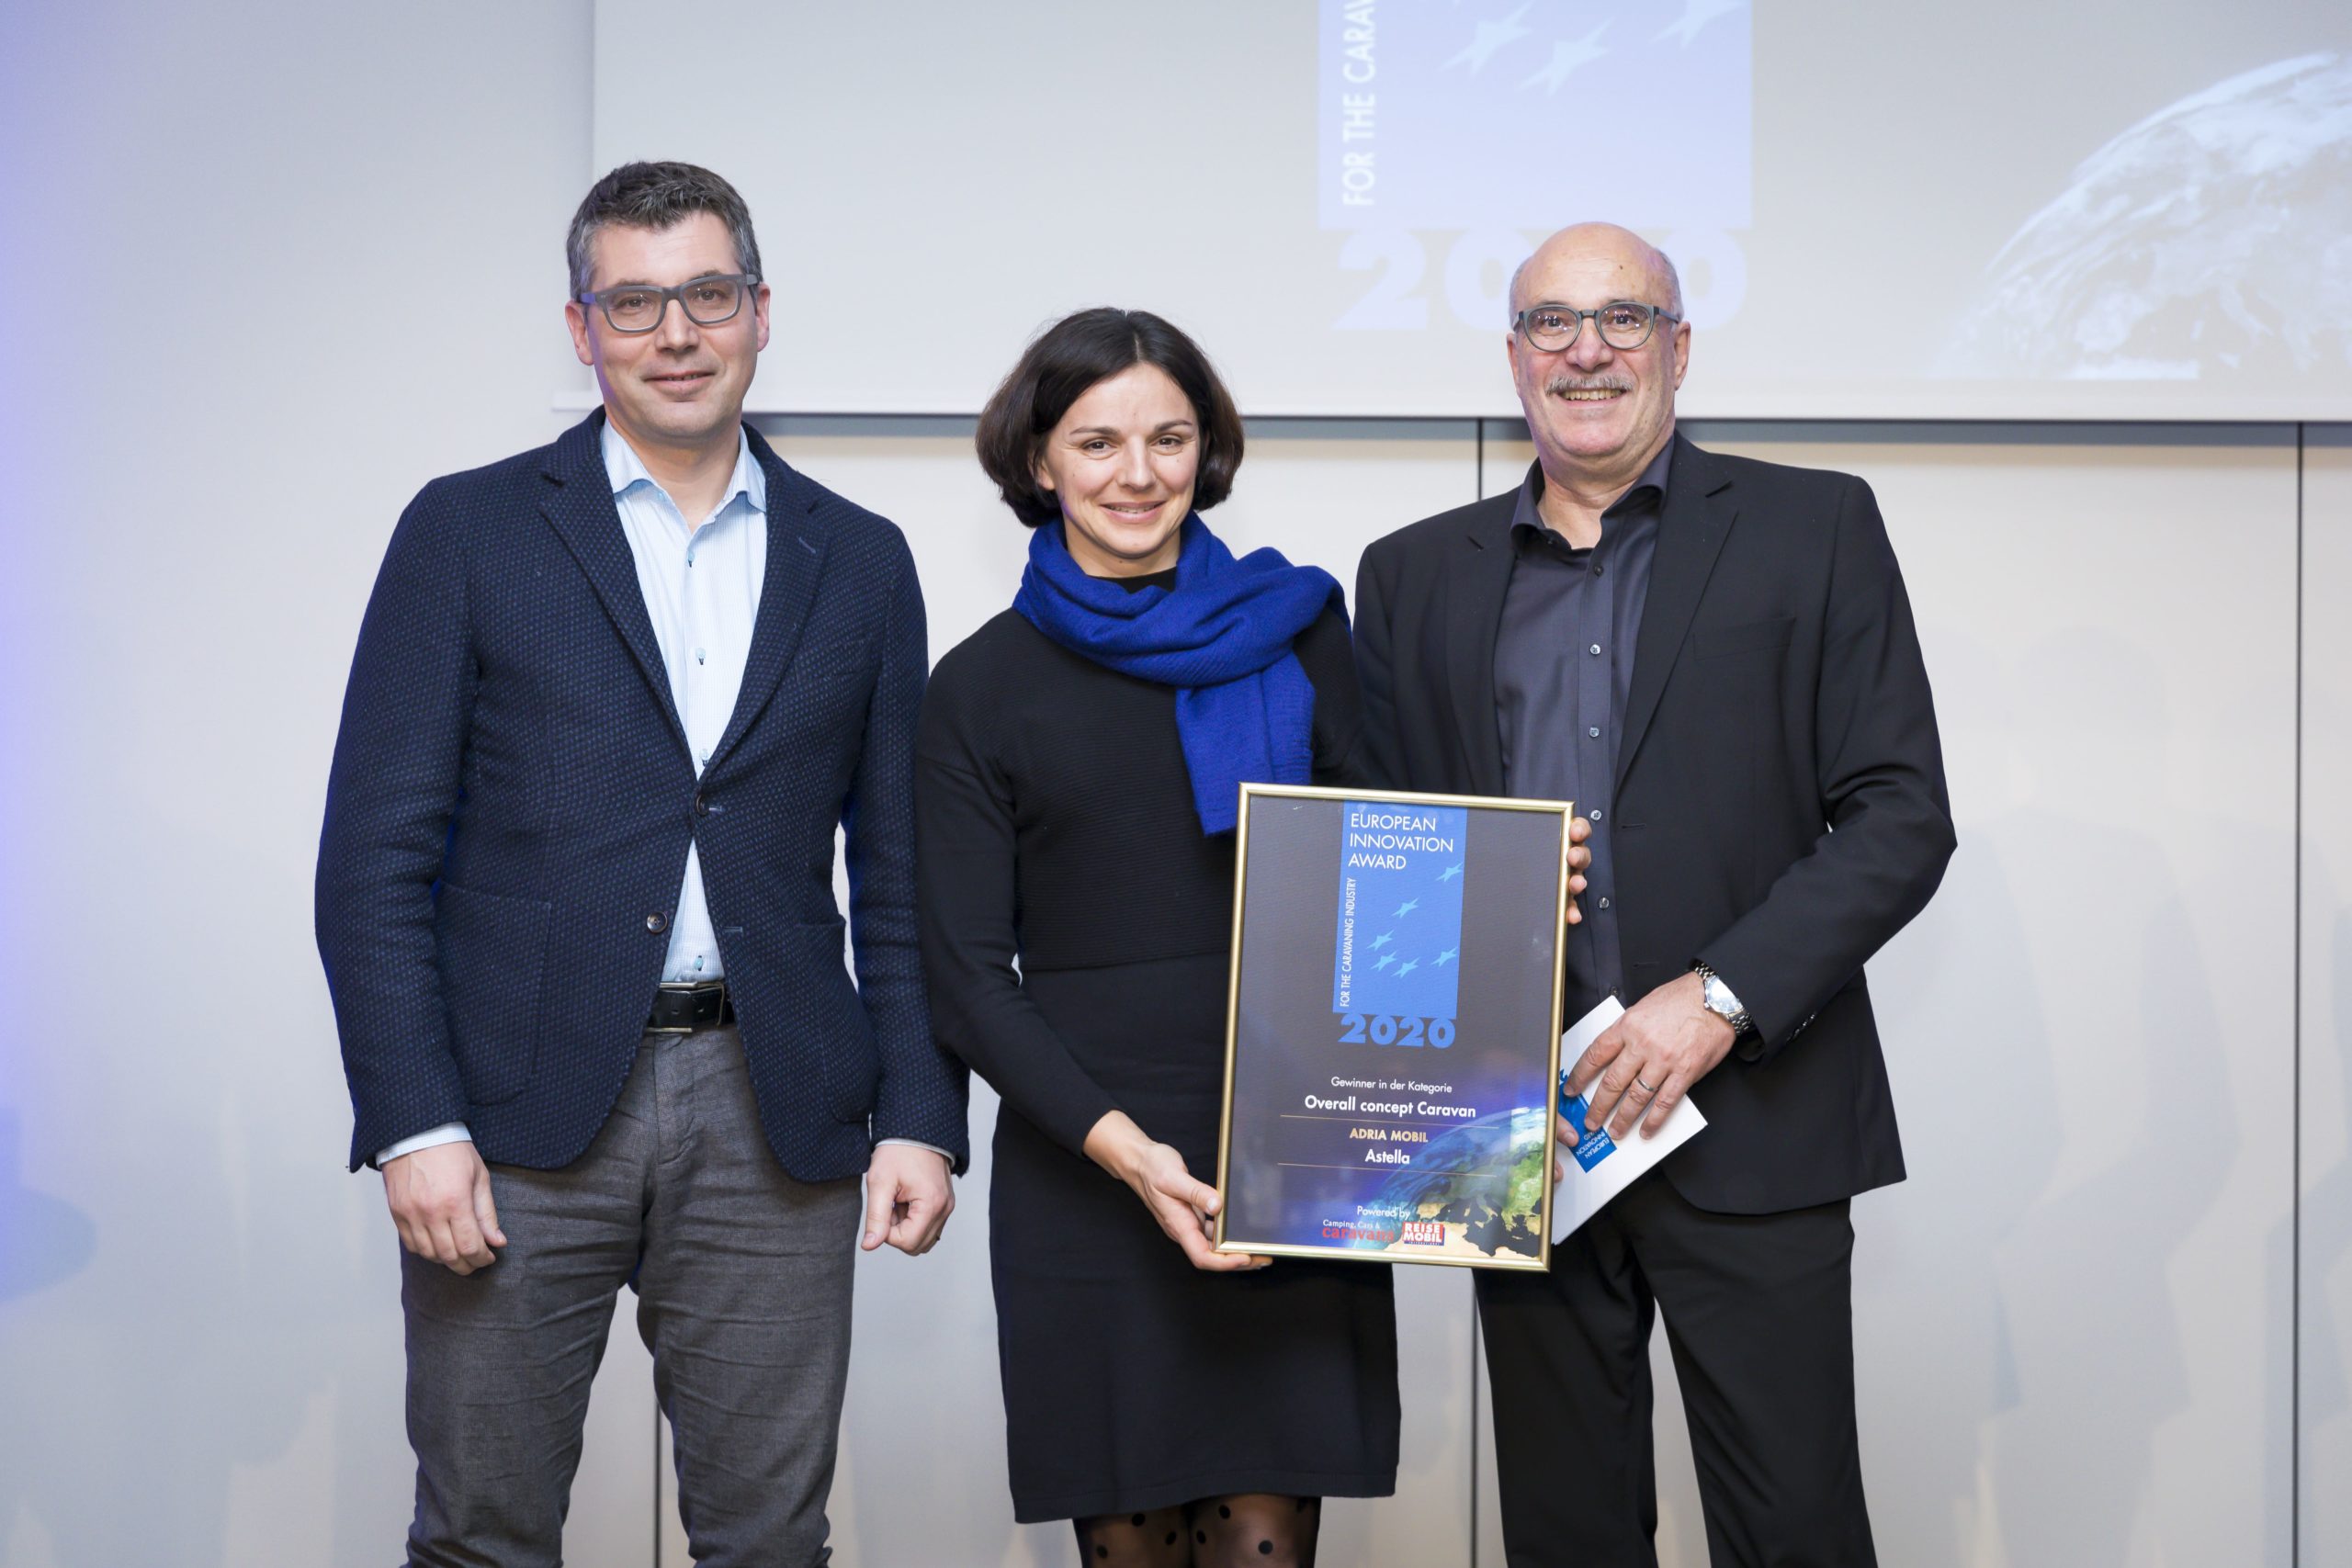 Adria Astella premiata con European Innovation Award 2020